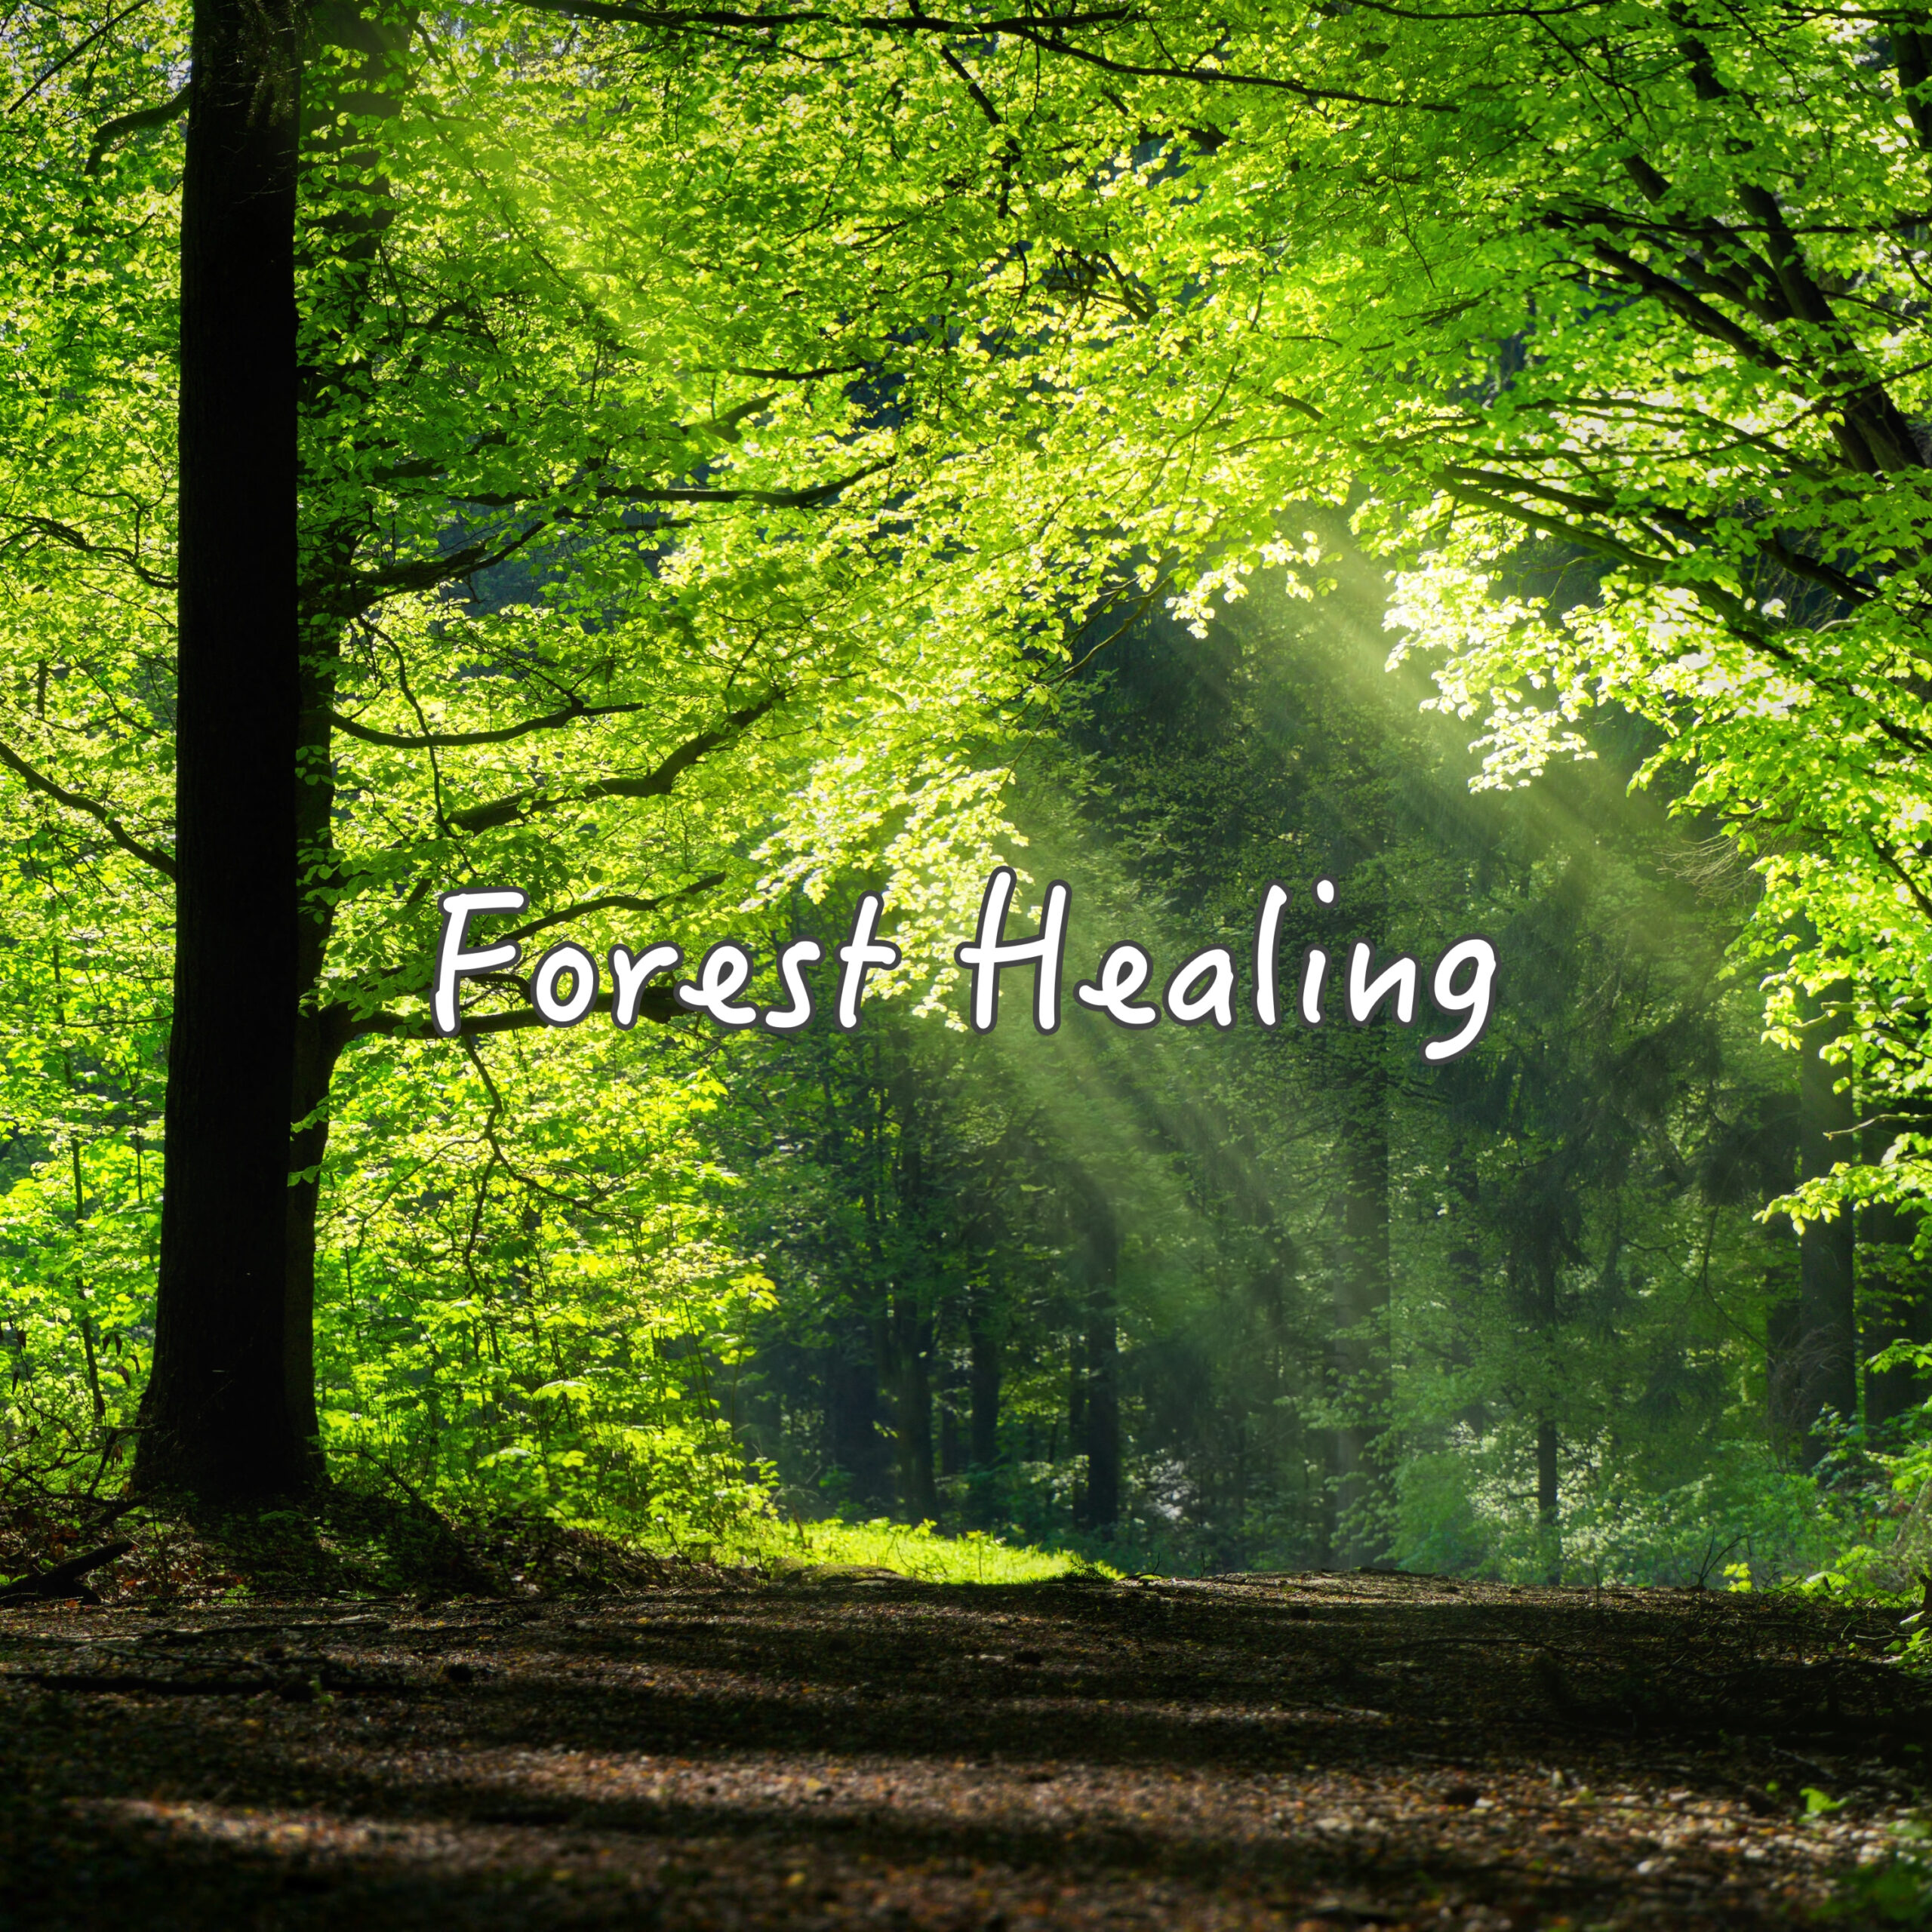 Forest Healing 瞑想音楽 綺麗なピアノと森の音で癒される 睡眠導入用 瞑想用 ヨガ用 作業集中用 森の音と川のせせらぎのASMR入り